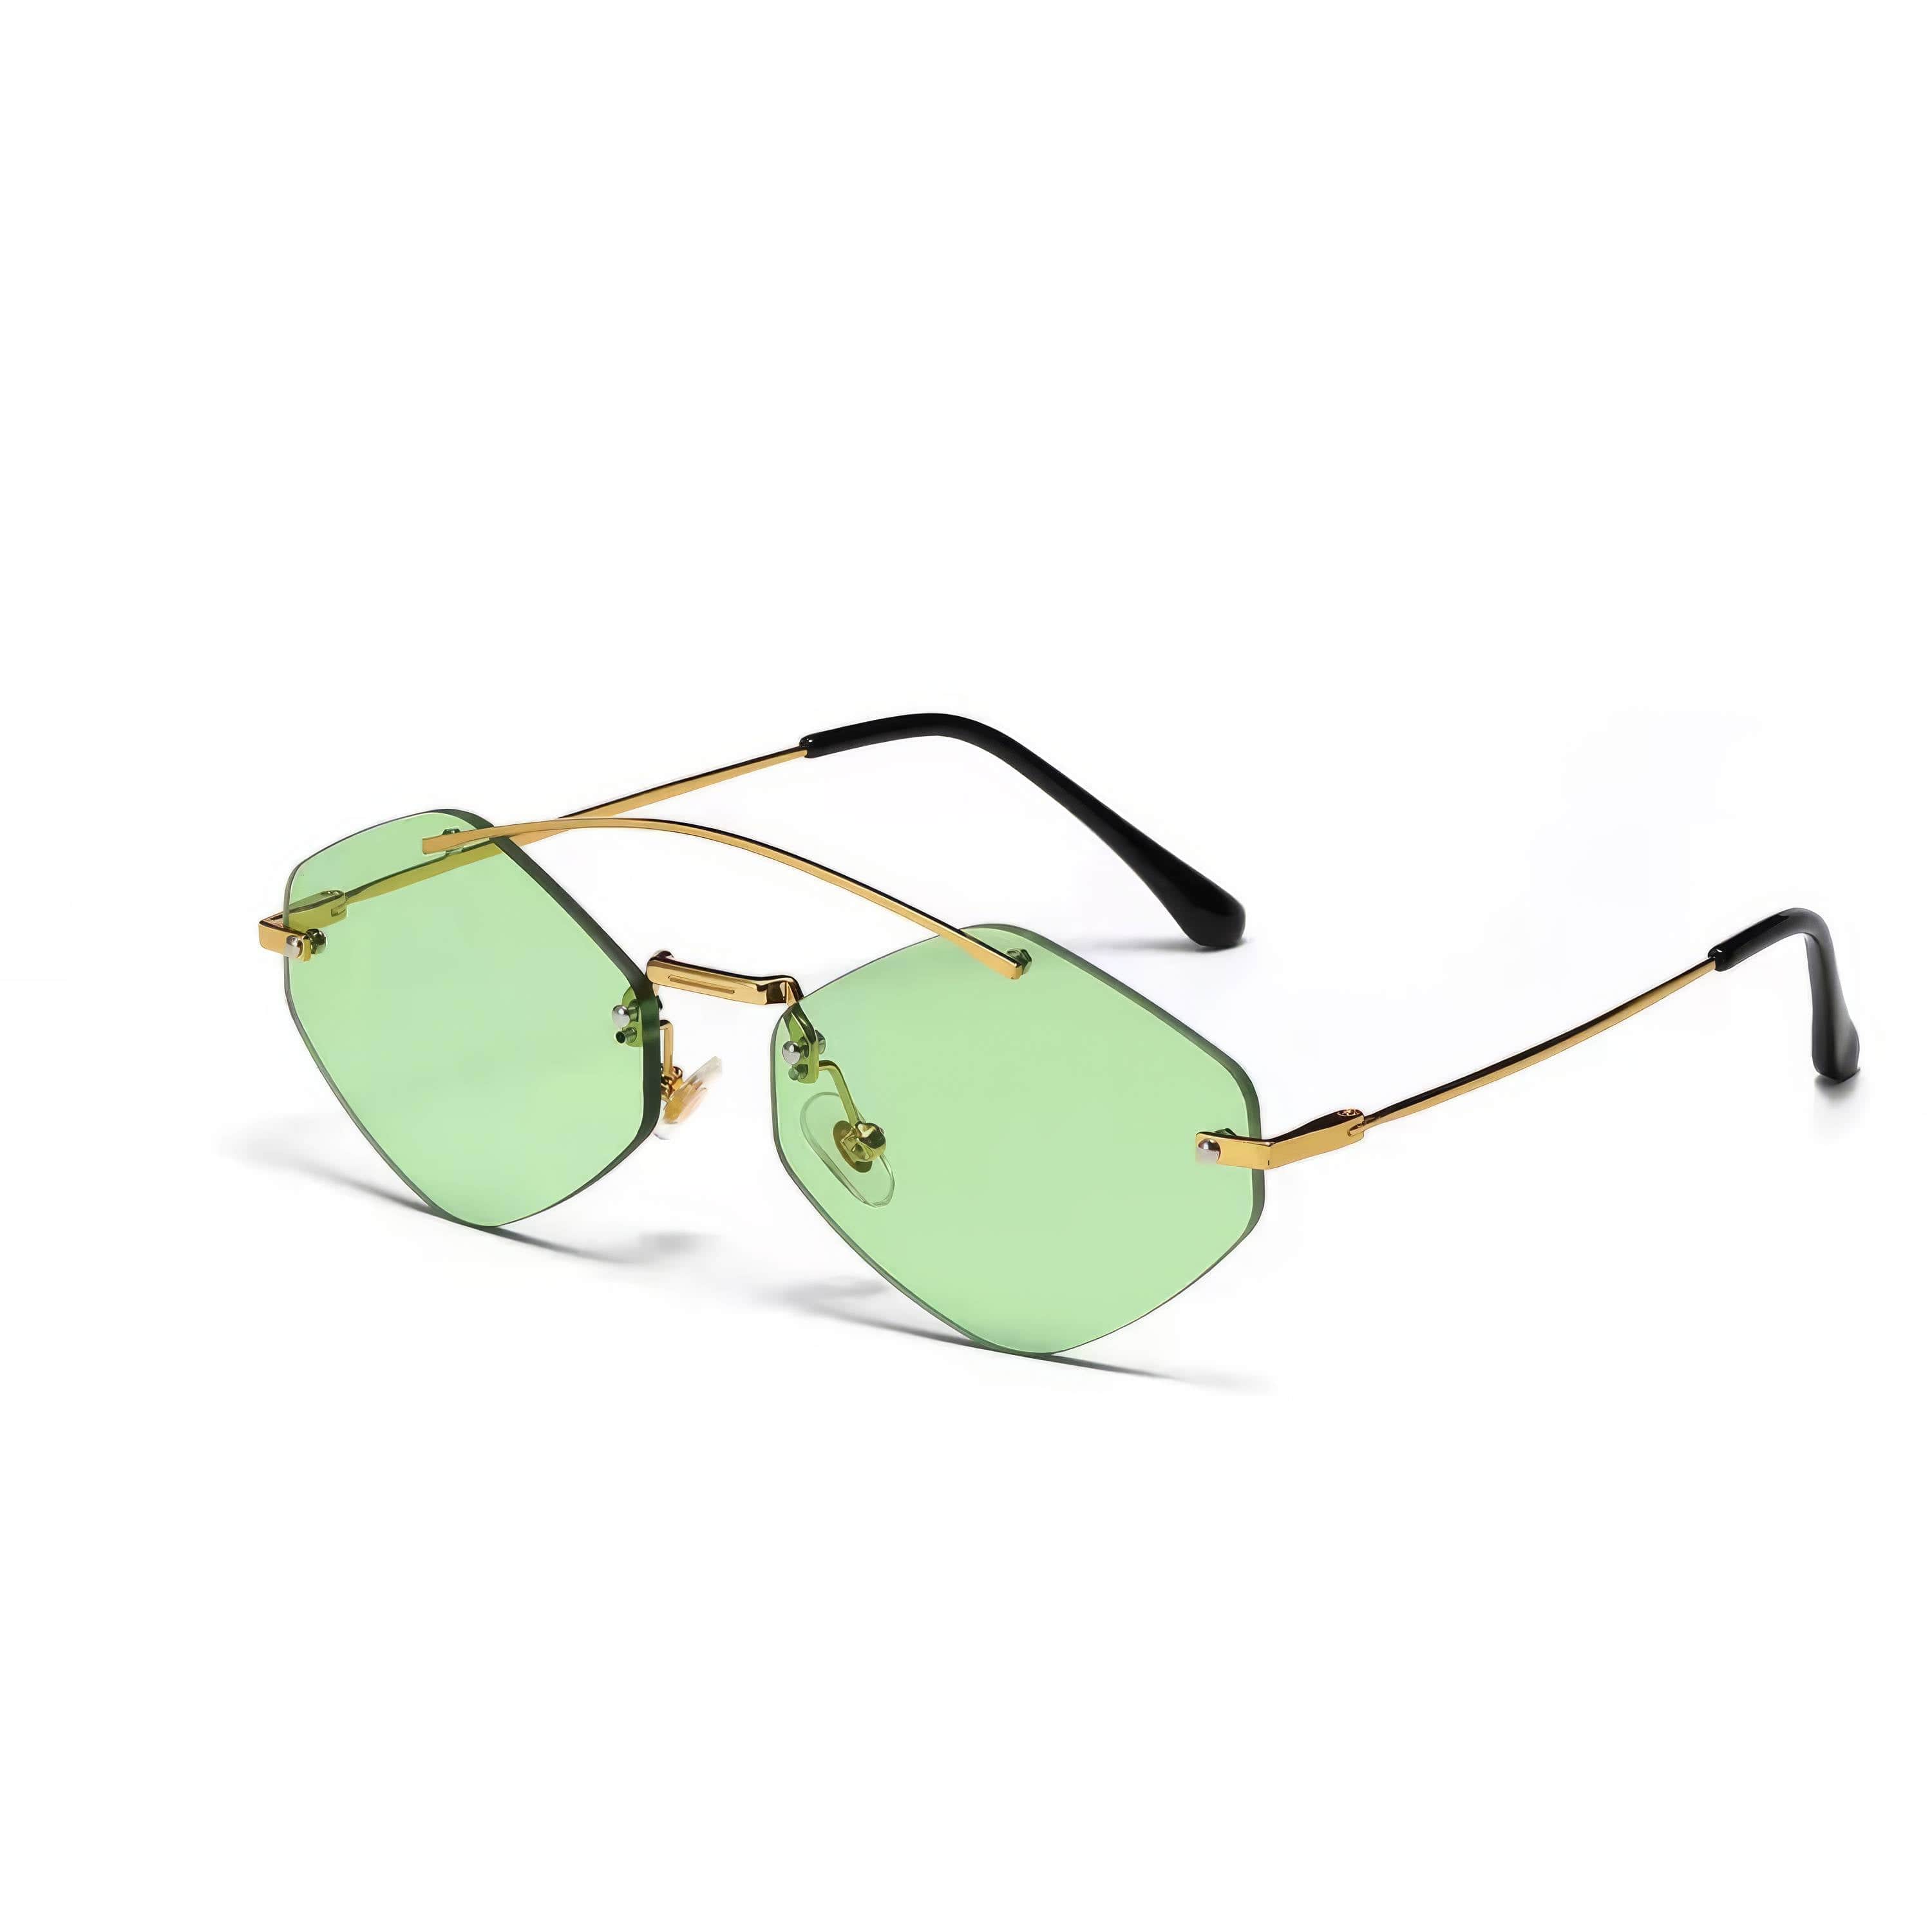 Retro Unique Double Bridge Sunglasses Green / Resin